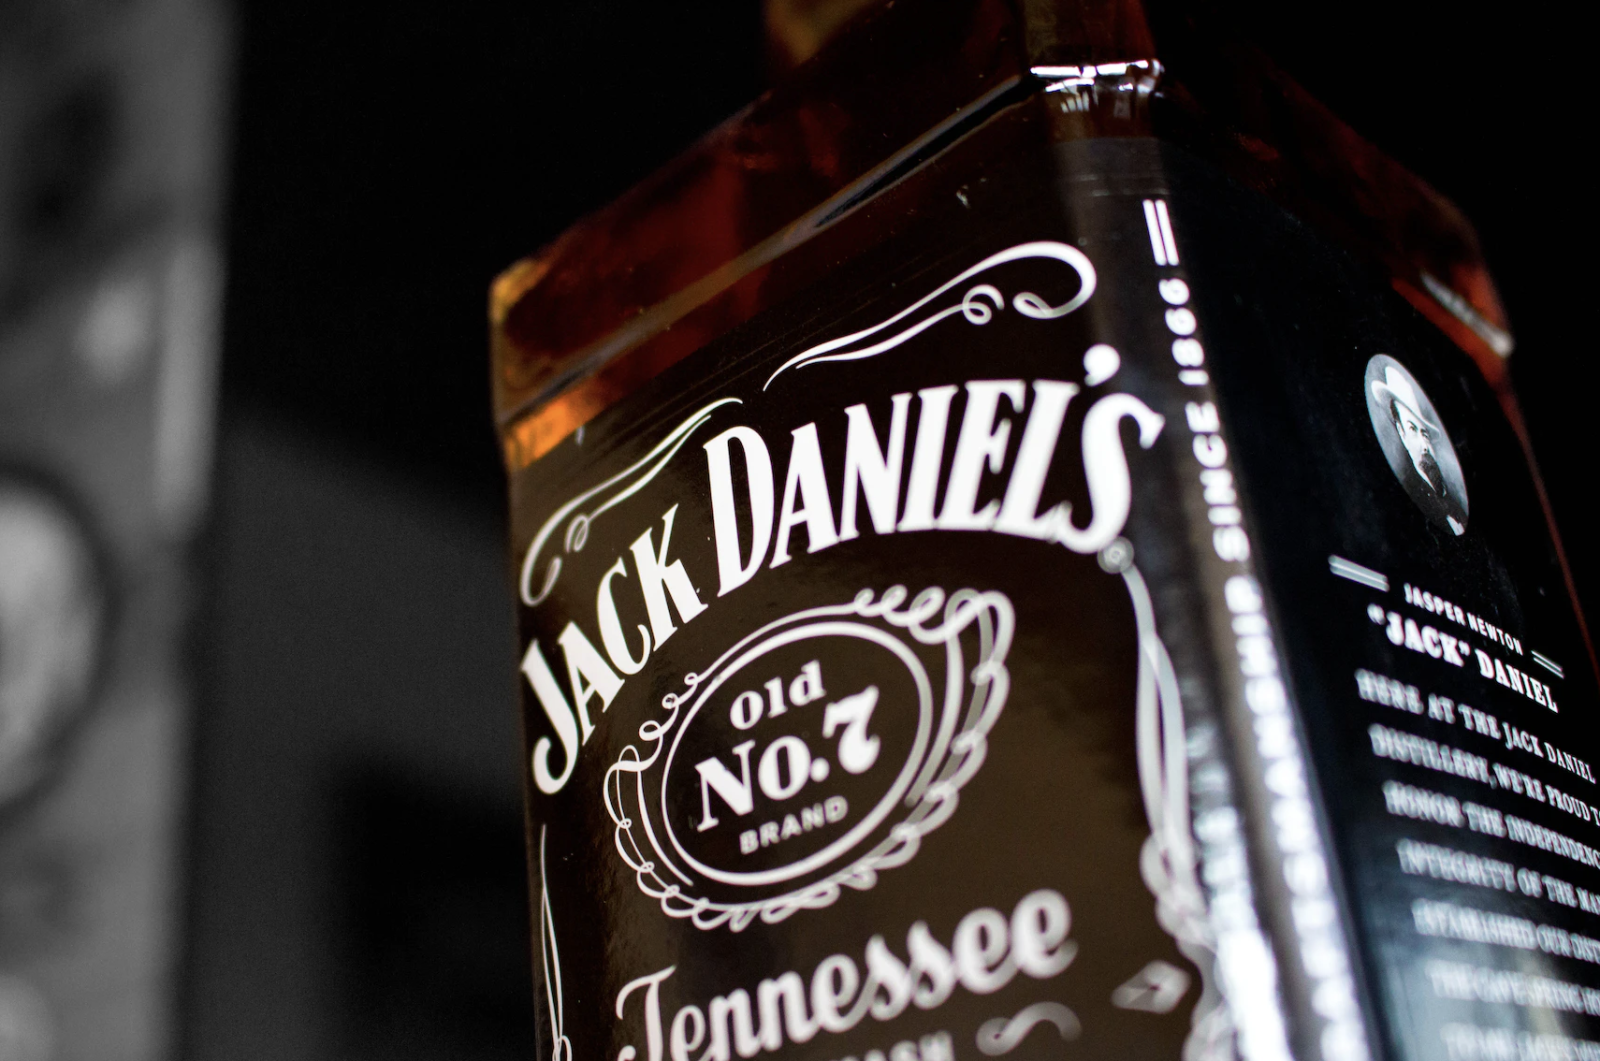 A Jack Daniel's bottle